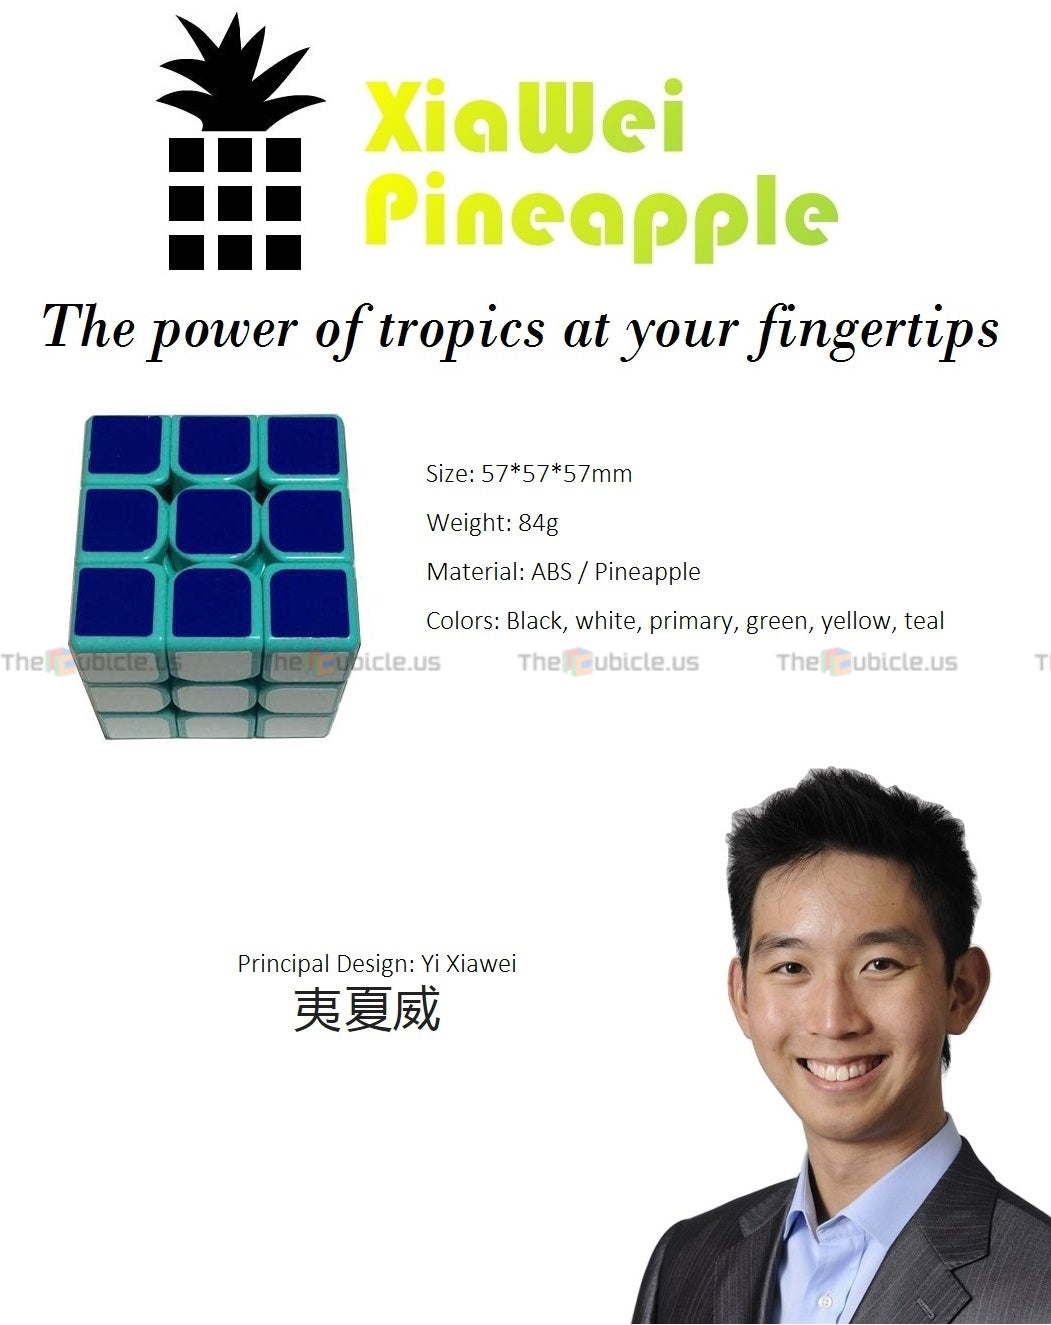 XiaWei Pineapple 3x3